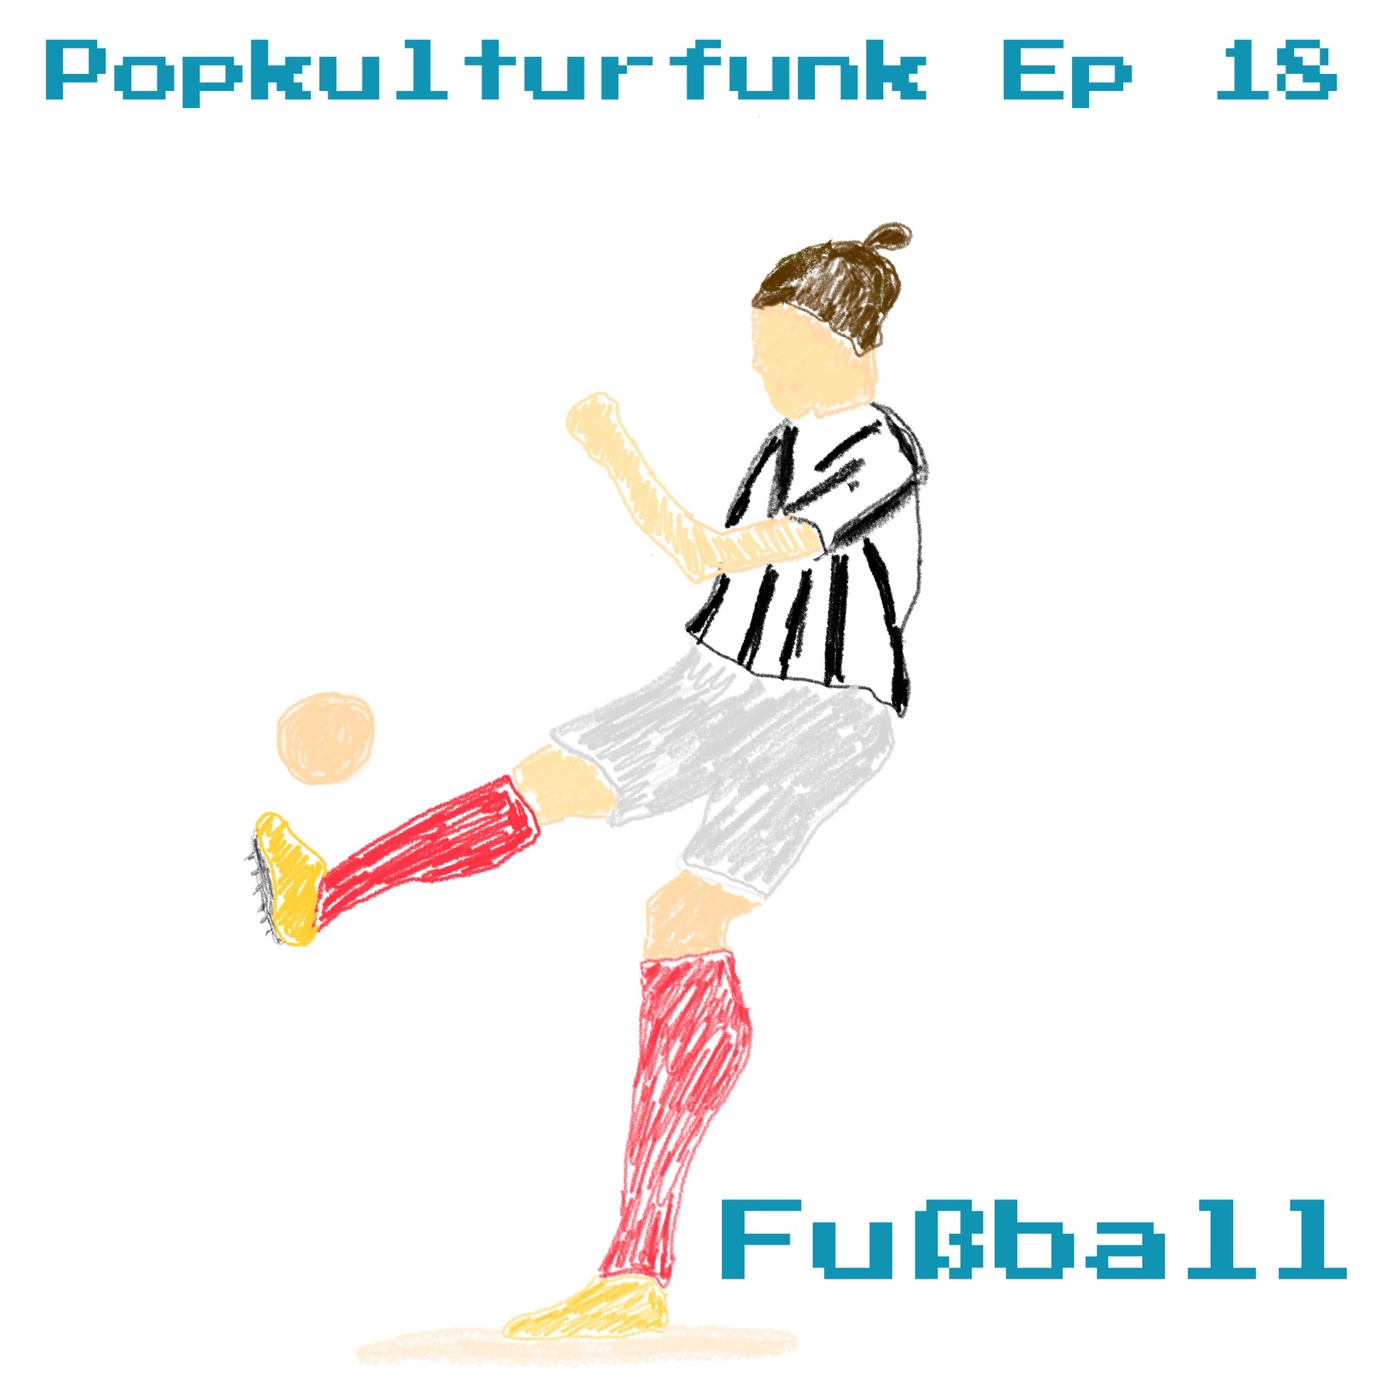 Episode 18: Fußball